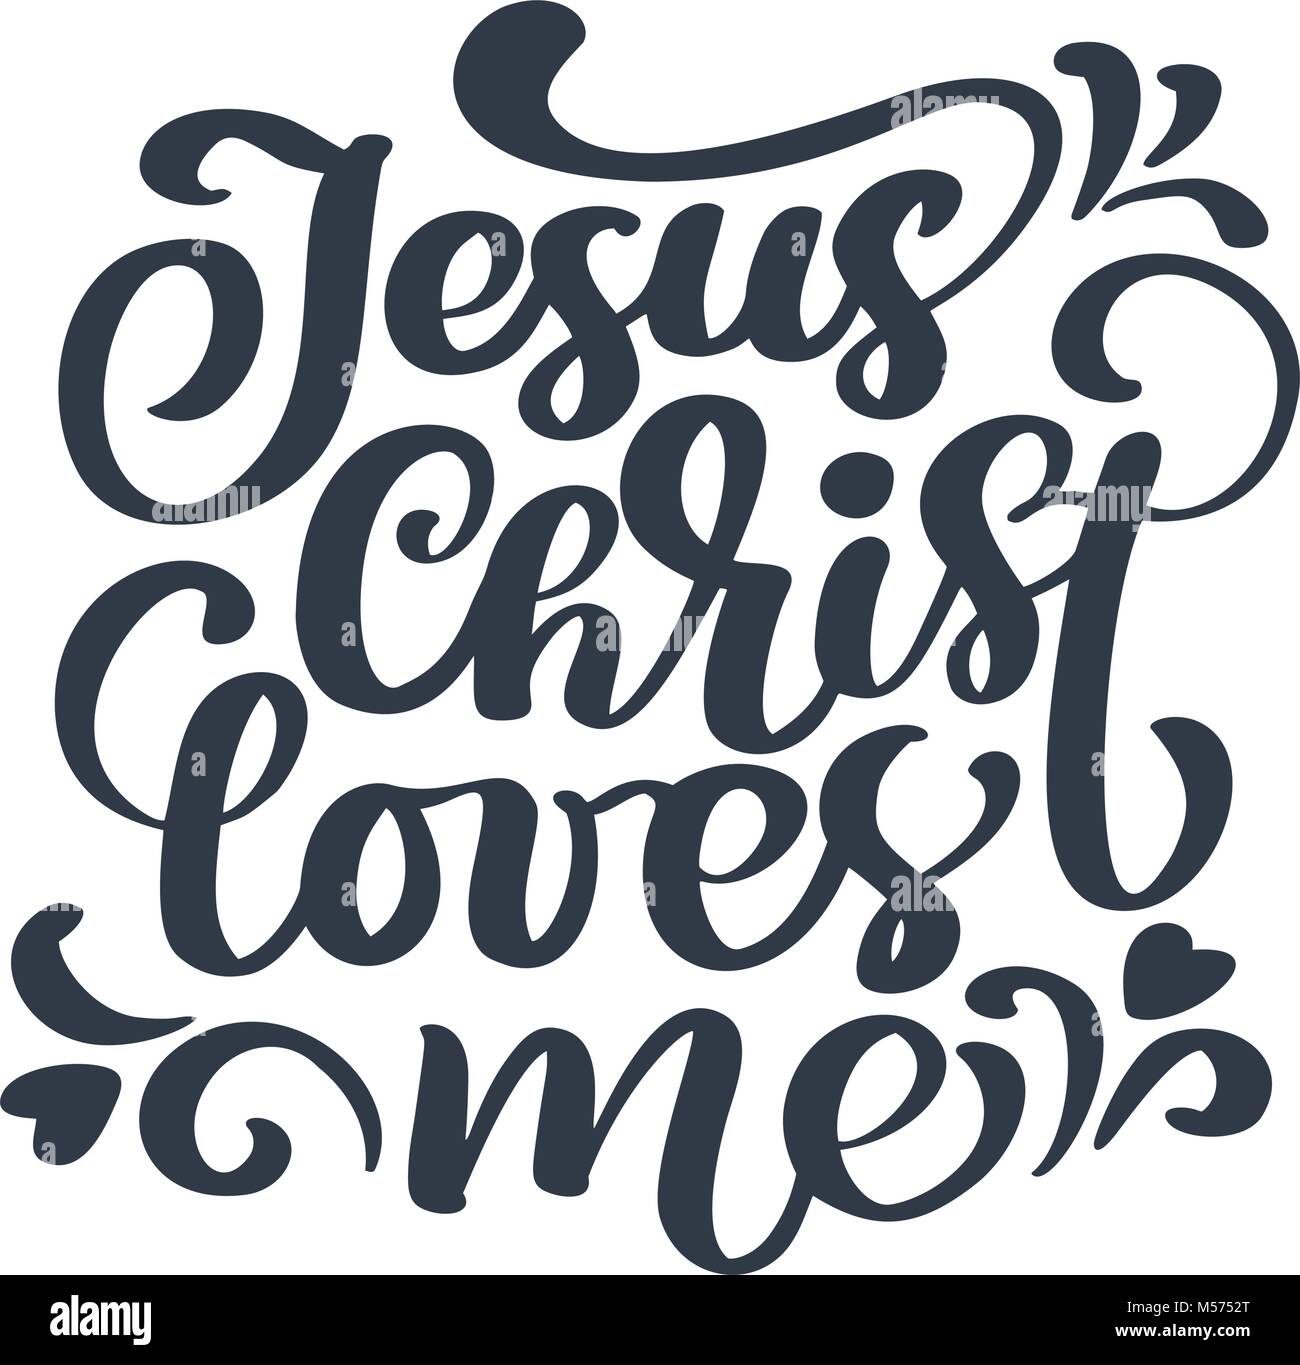 Disegnata a mano Gesù Cristo mi ama il testo su sfondo bianco. Calligraphy lettering illustrazione vettoriale Illustrazione Vettoriale